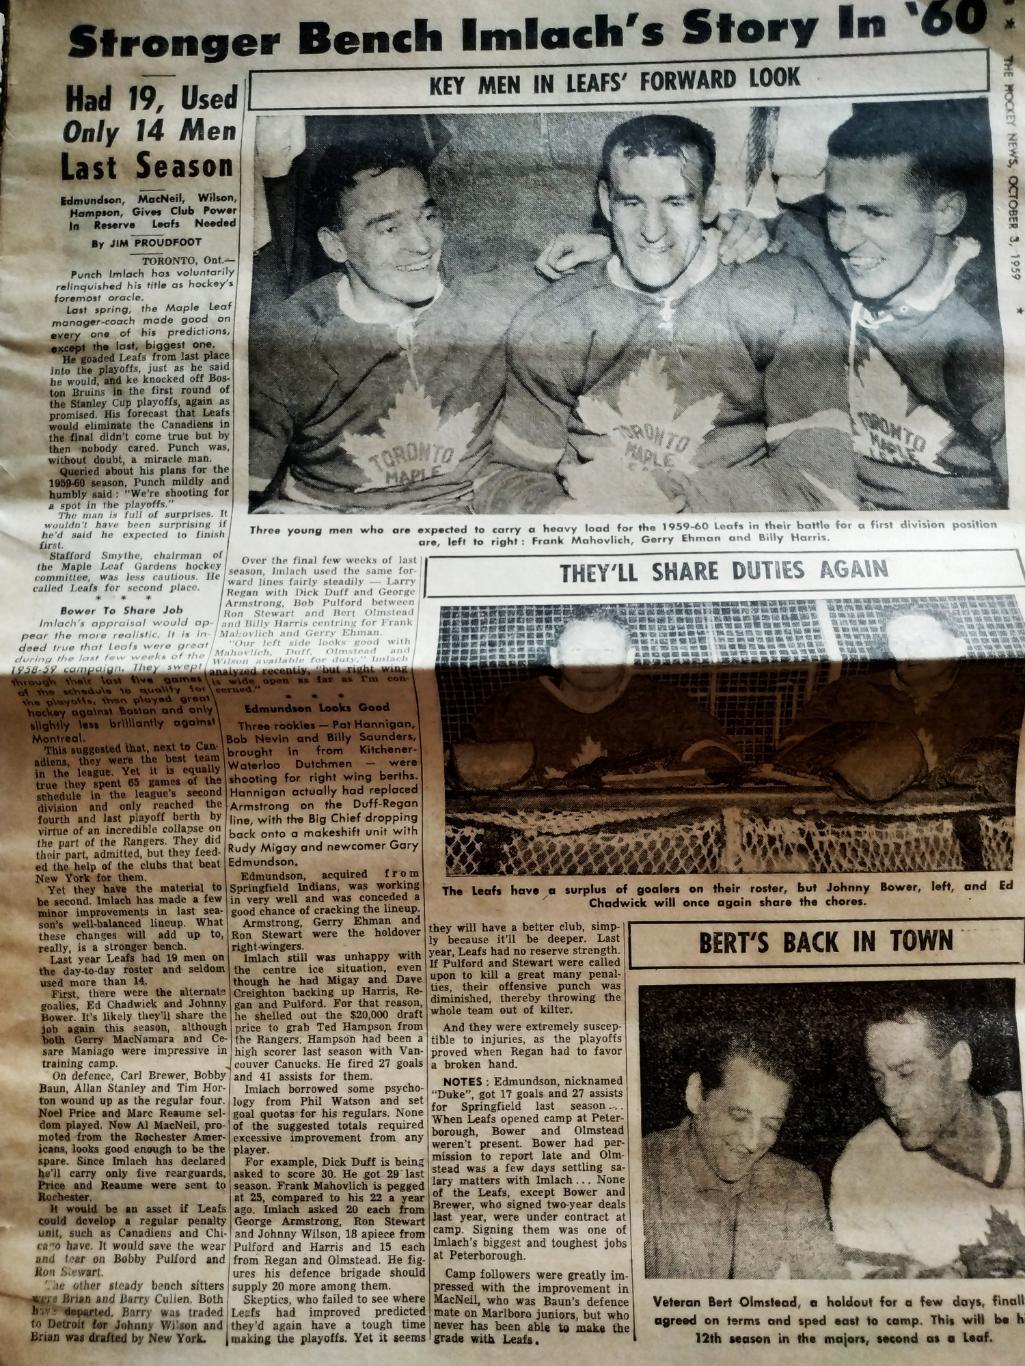 ХОККЕЙ ЖУРНАЛ ЕЖЕНЕДЕЛЬНИК НХЛ НОВОСТИ ХОККЕЯ OCT.3 1959 NHL THE HOCKEY NEWS 2